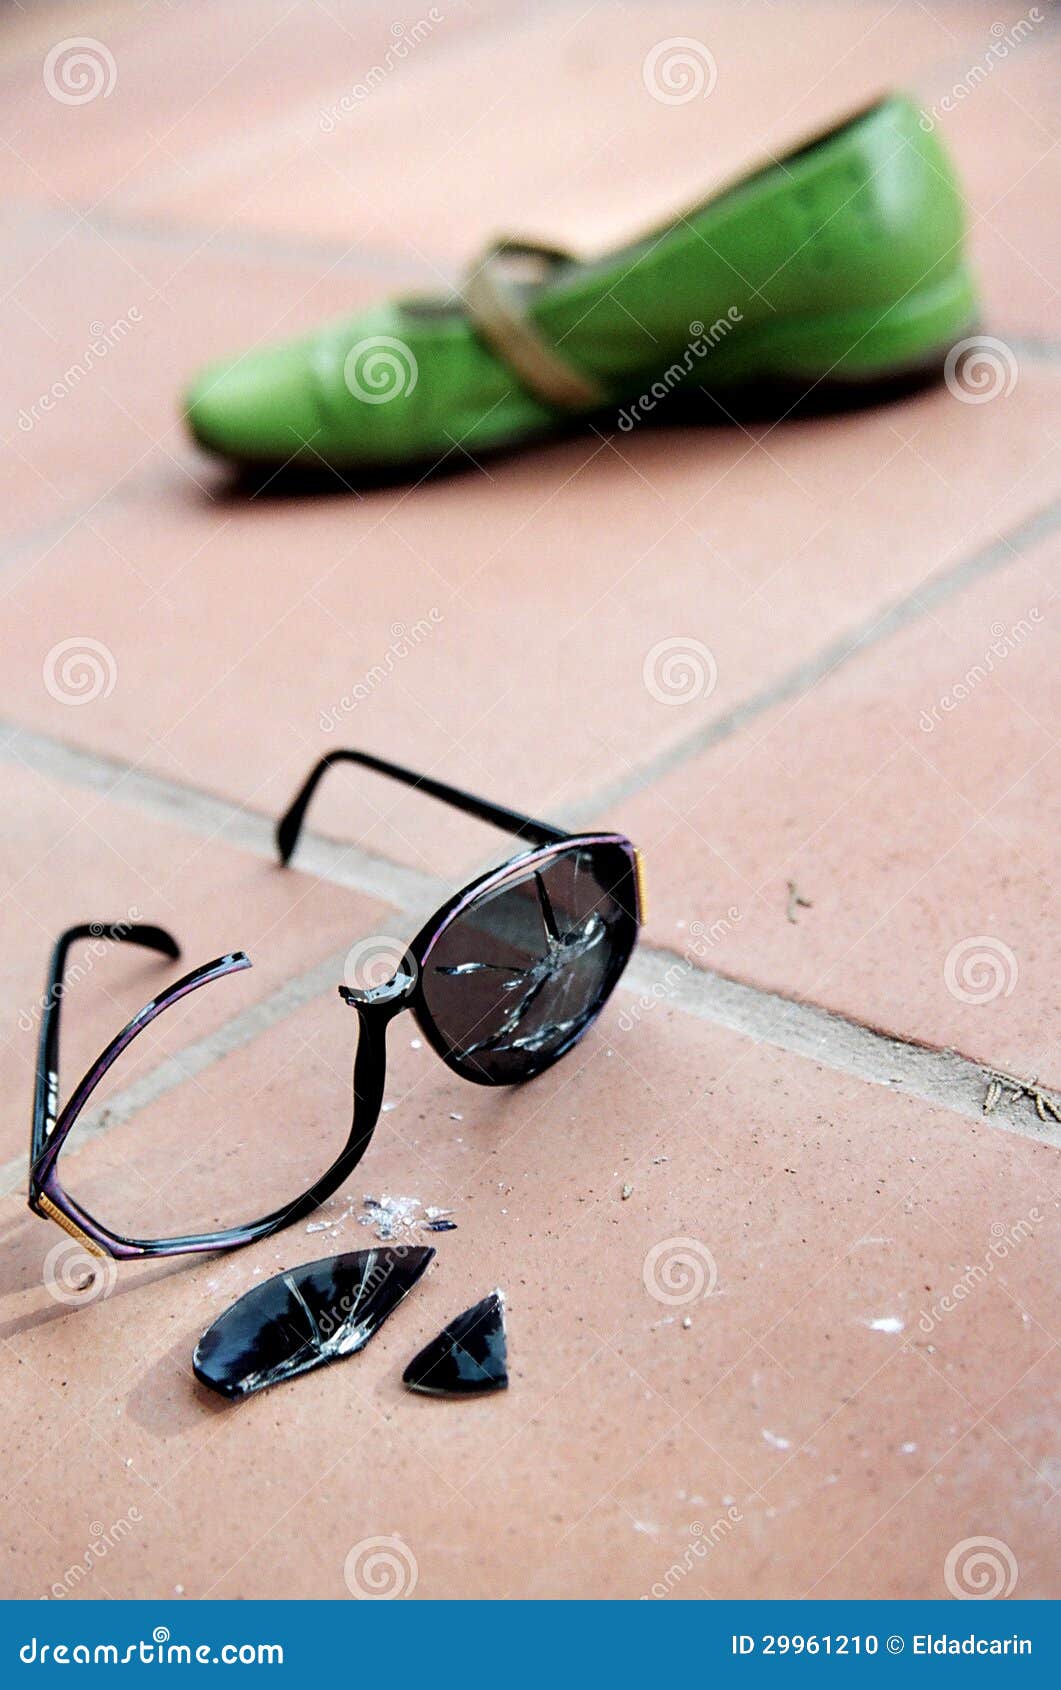 Разбили очко. Сломанные очки. Сломанные солнцезащитные очки. Разбитые солнечные очки. Треснувшие очки.